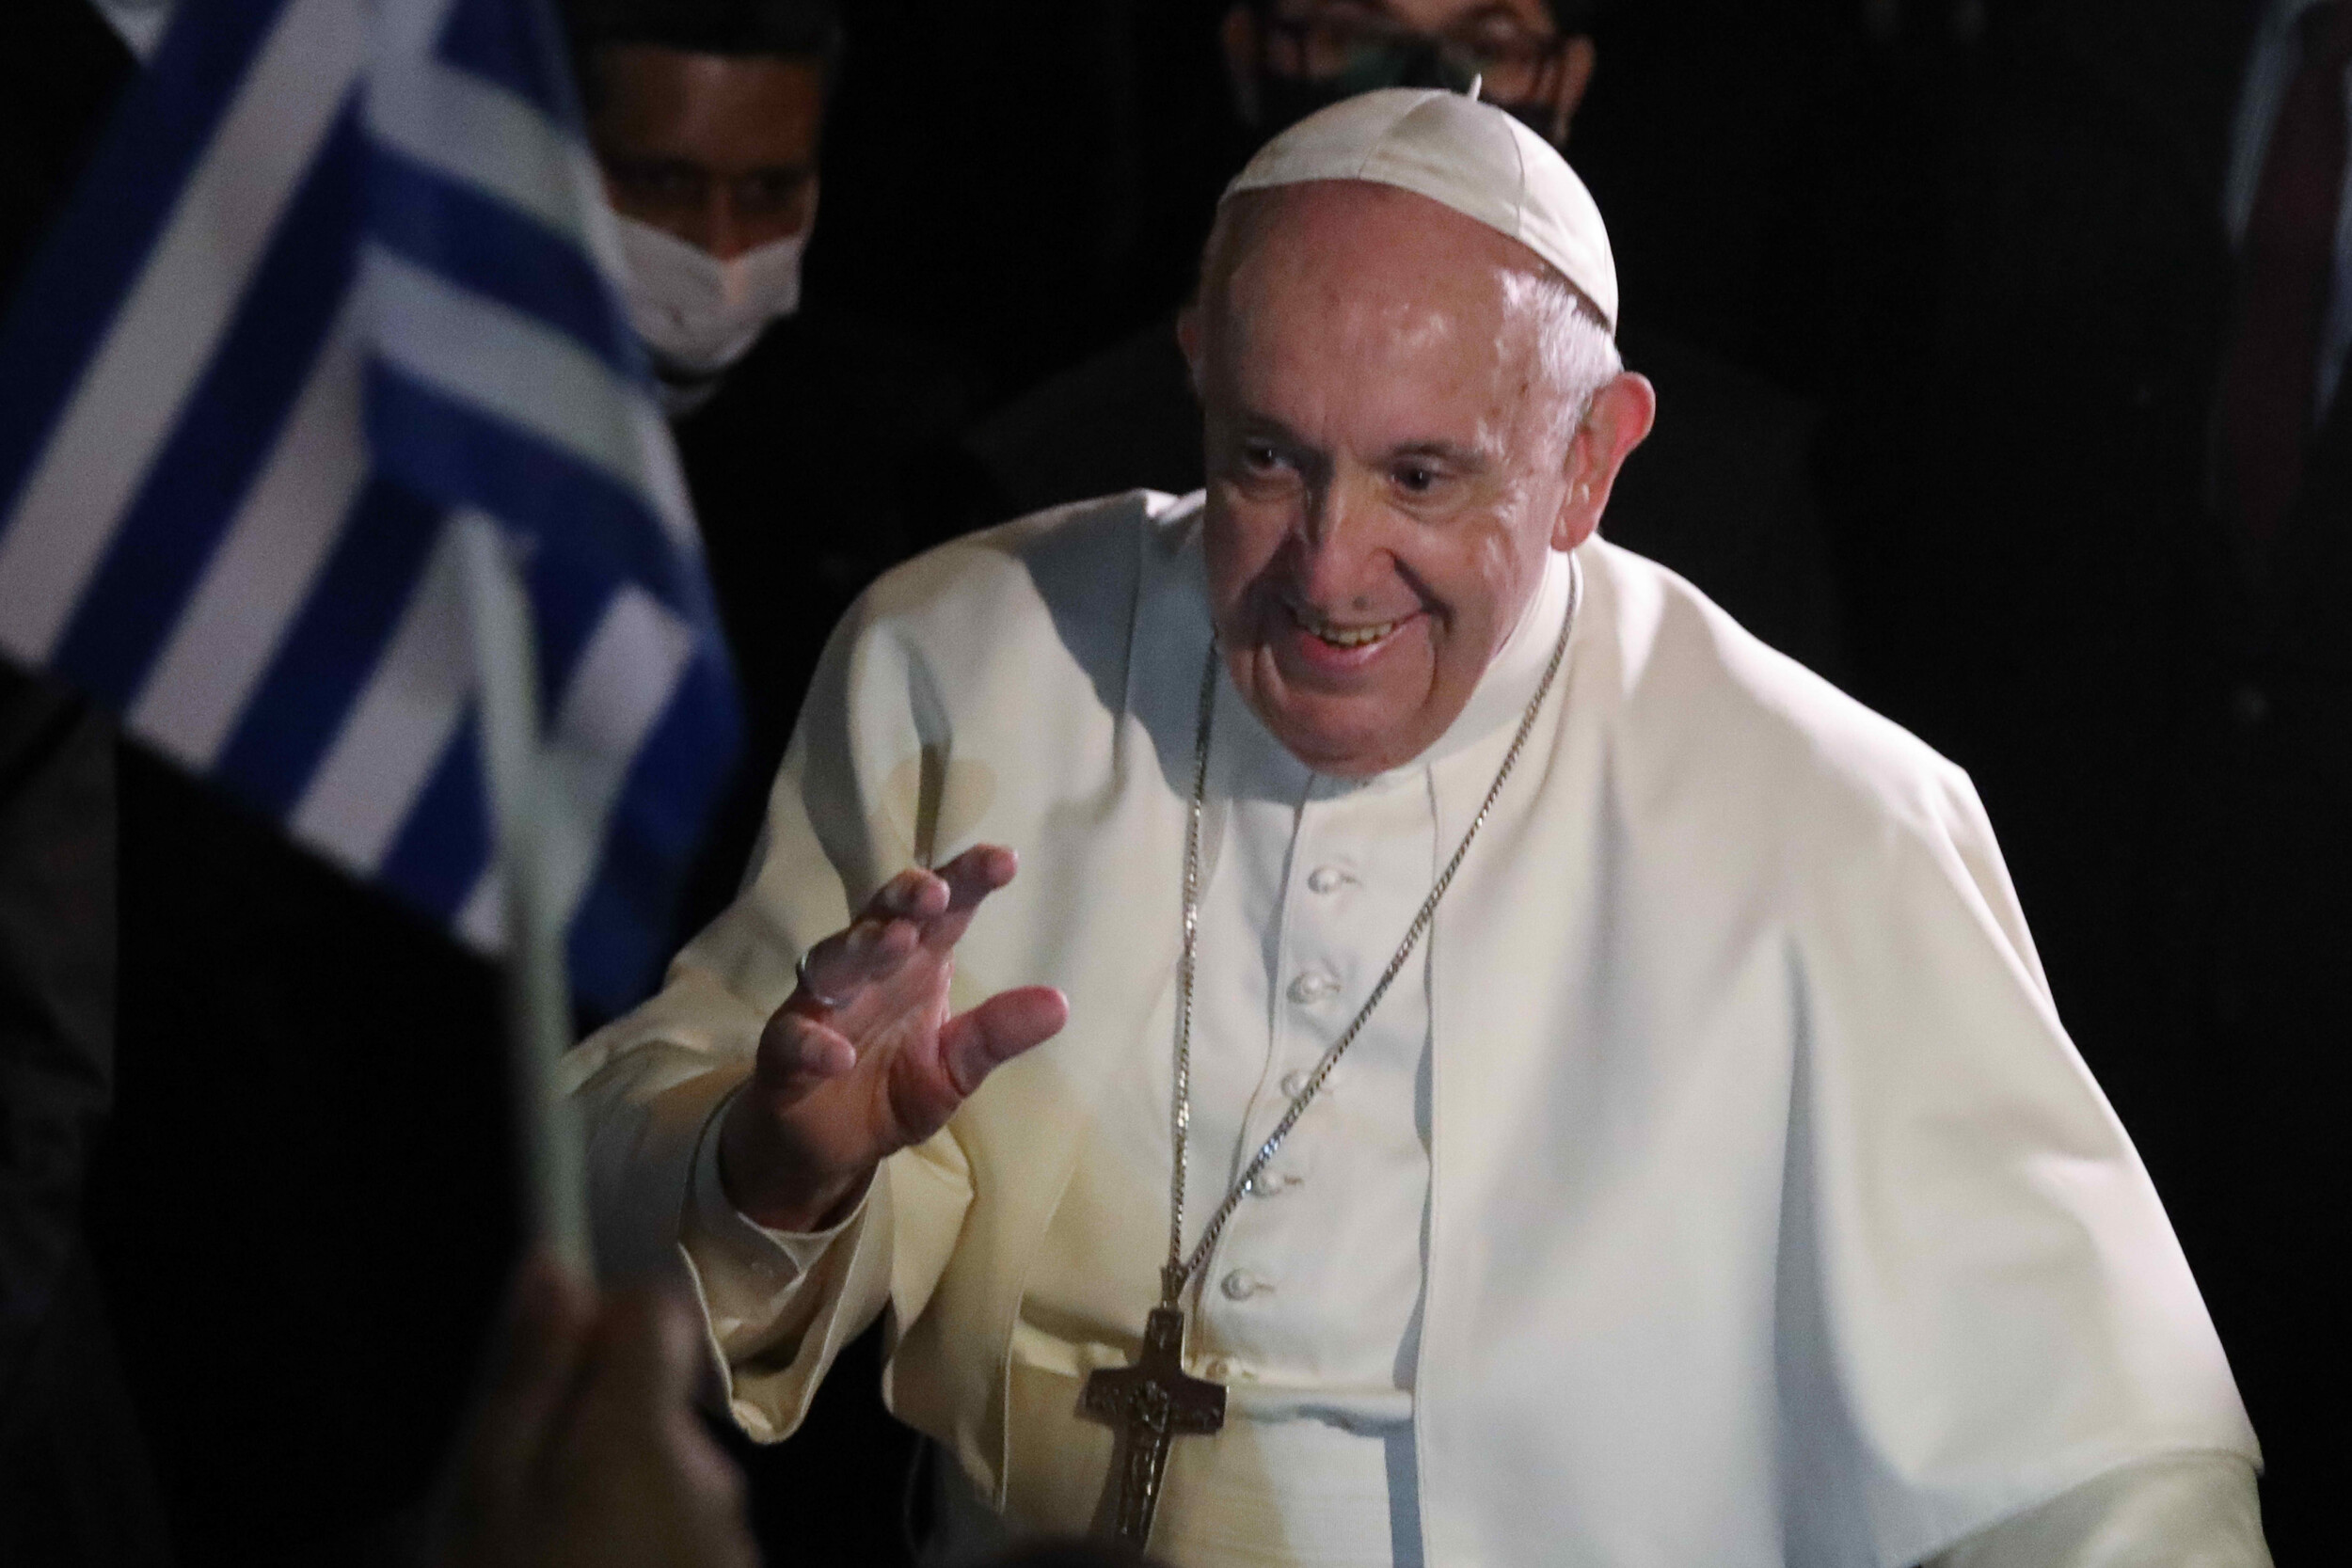 Ο Πάπας Φραγκίσκος γιορτάζει την ένατη επέτειο από την εκλογή του